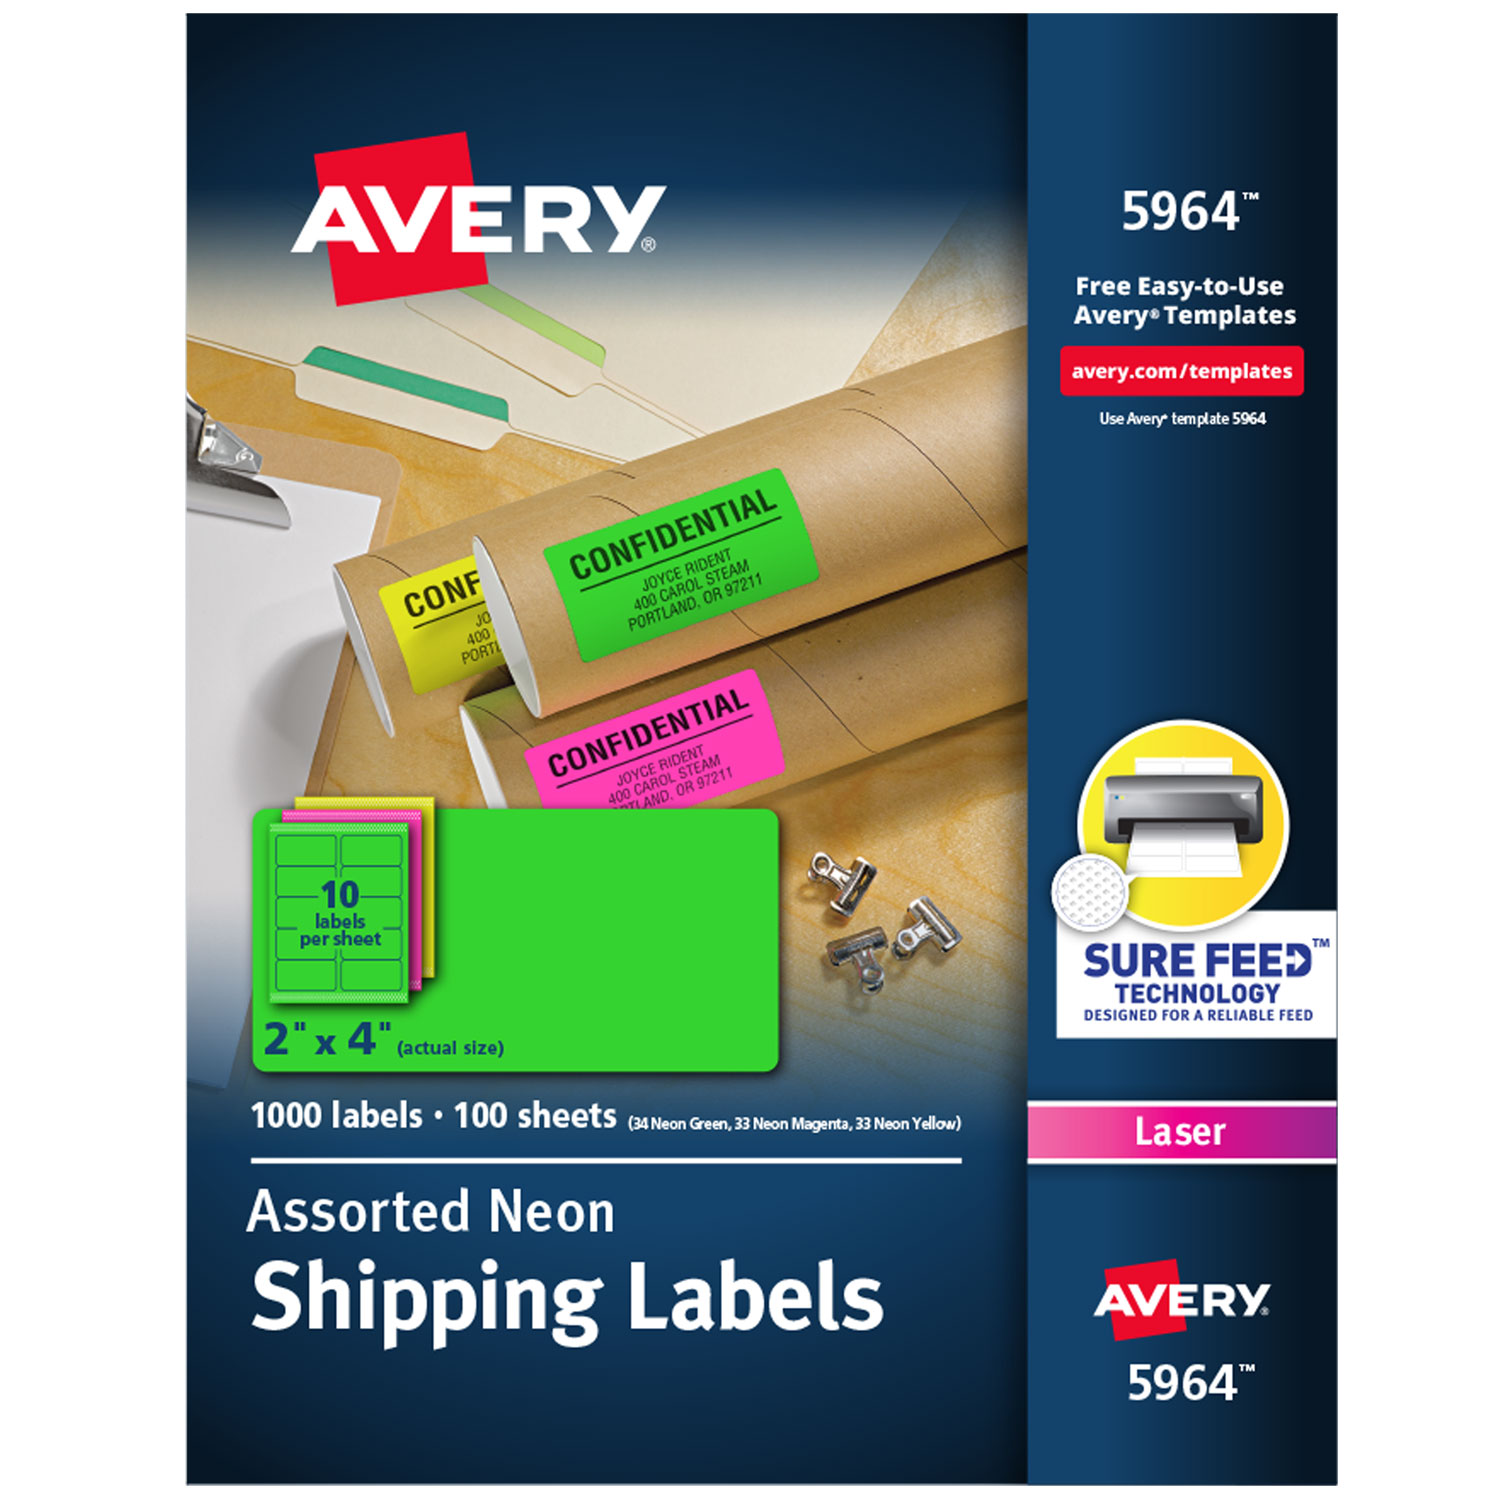 Avery Dennison AVE5971 Laser Label for sale online 